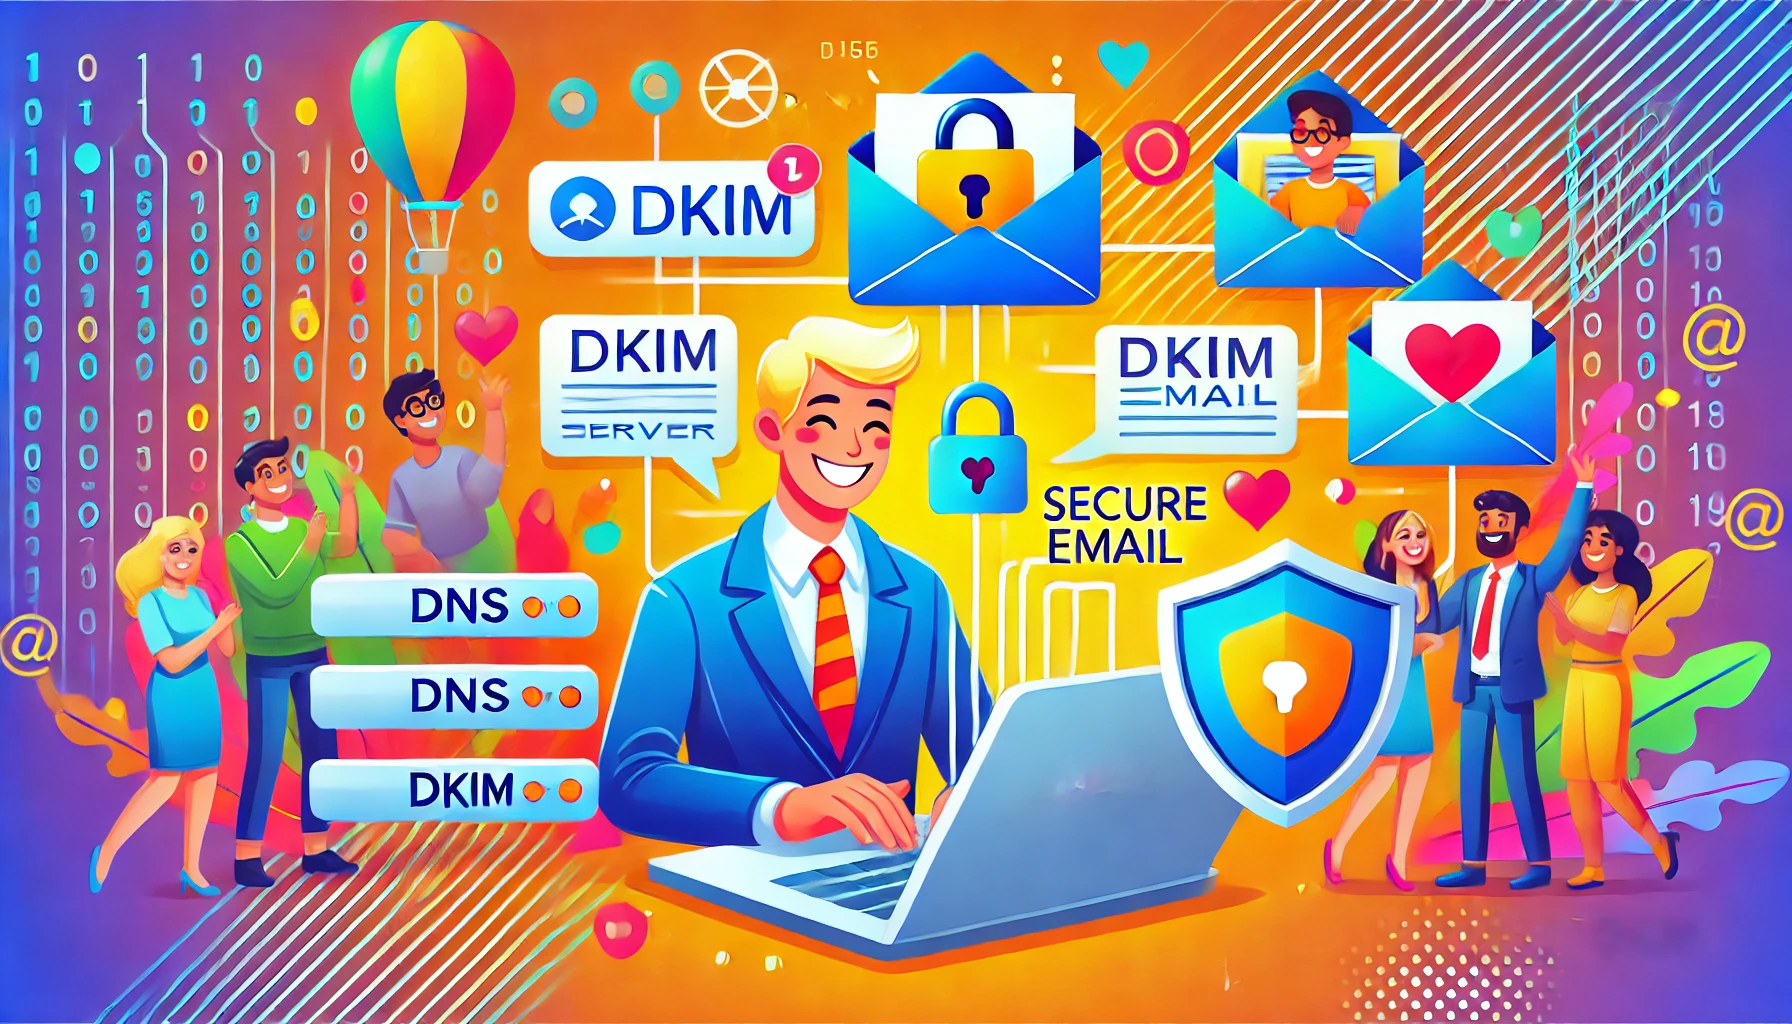 Co je to DKIM certifikát a jak zvyšuje bezpečnost e-mailové komunikace?